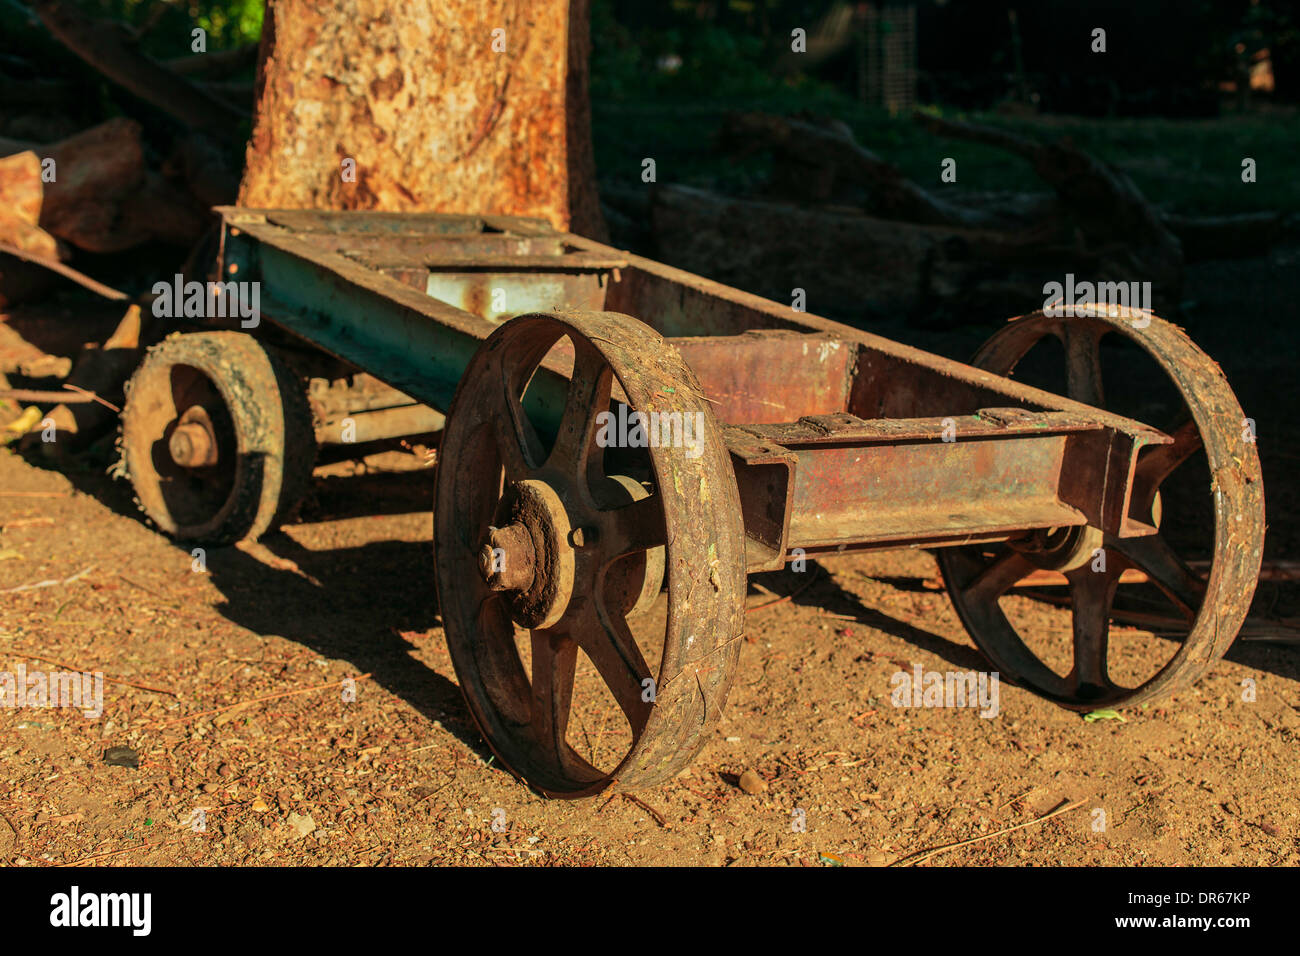 Arbre de roue en fer rouille panier junk scrap vert arbre ombre légère rusty Egypte Banque D'Images